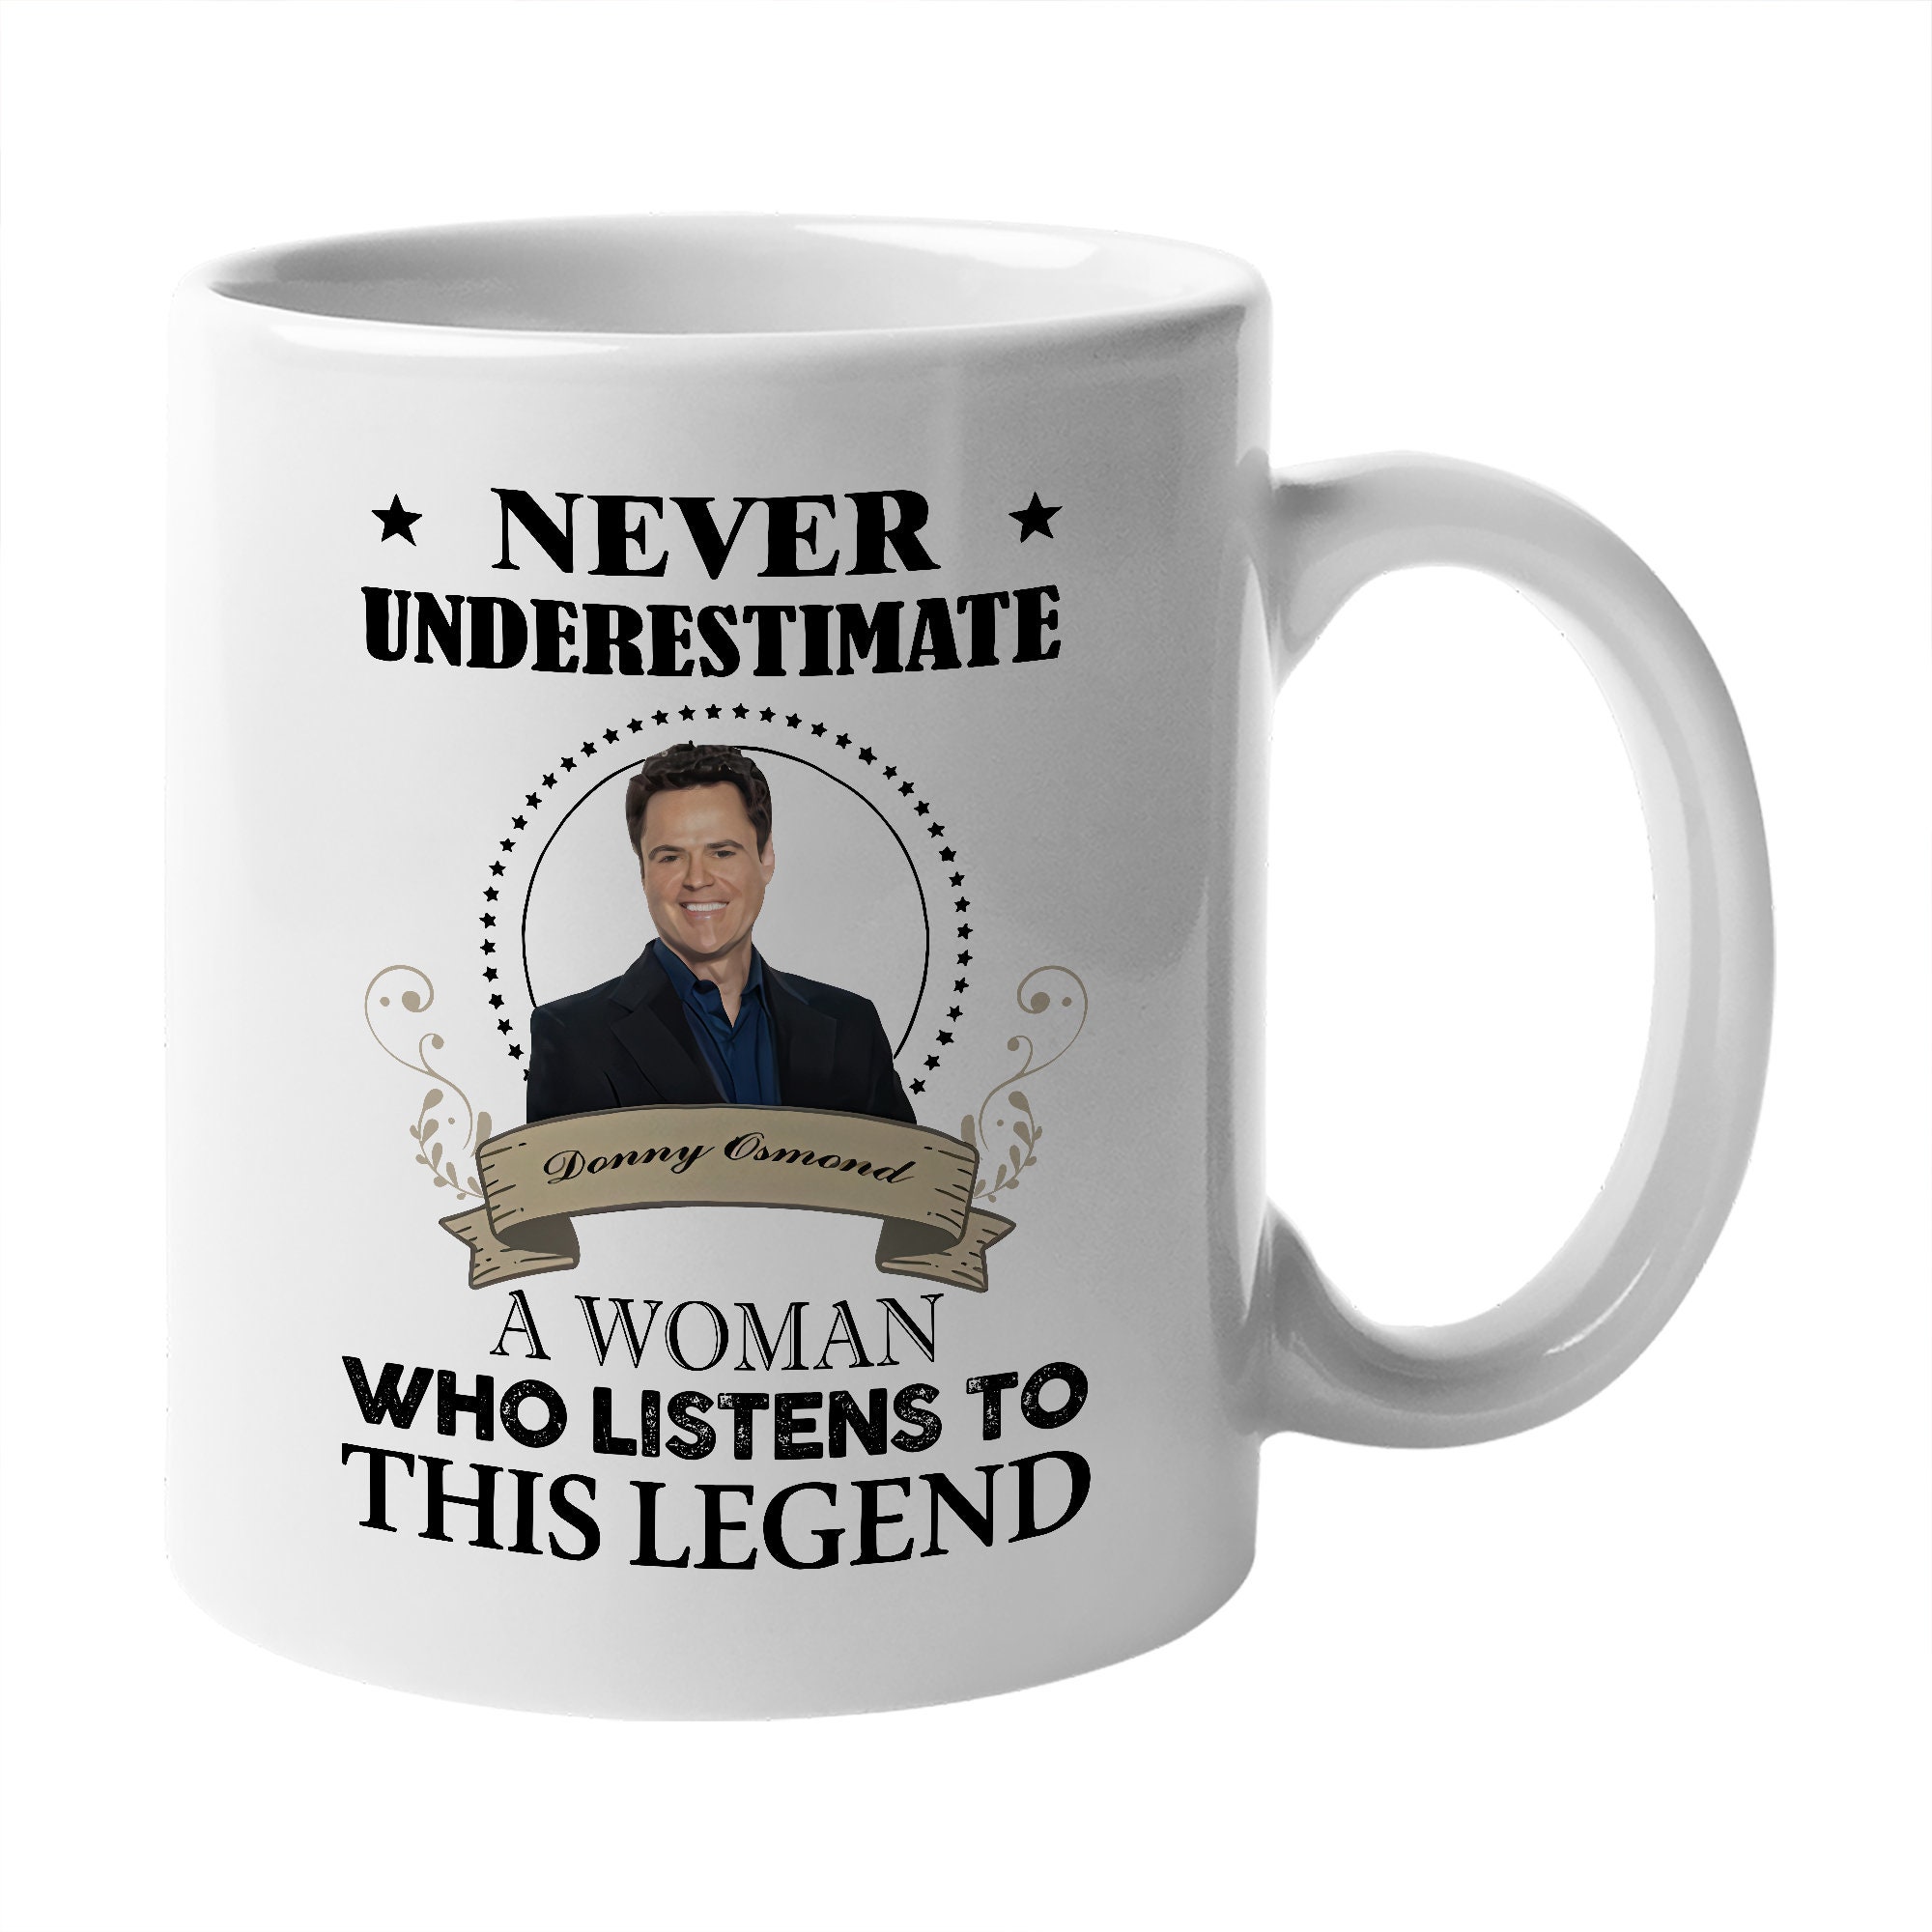 Funny Donny Osmond Mug Woman Listen This Legend Mug Gift For 80S 90S American Singer Lover Fans